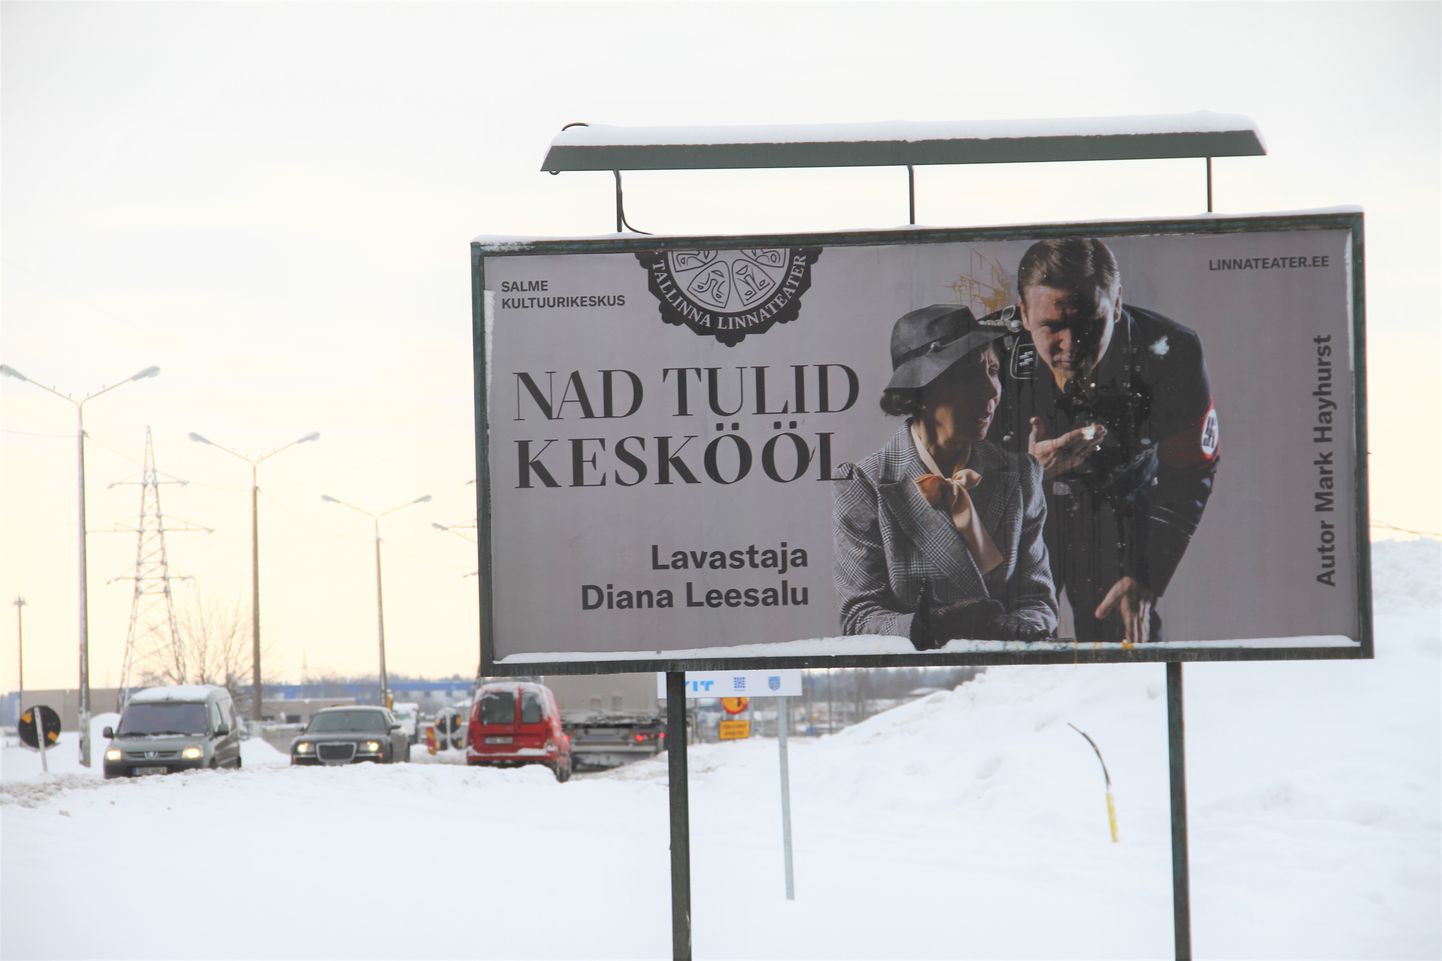 Плакат в Нарве, рекламирующий спектакль Таллиннского городского театра "Они пришли в полночь".